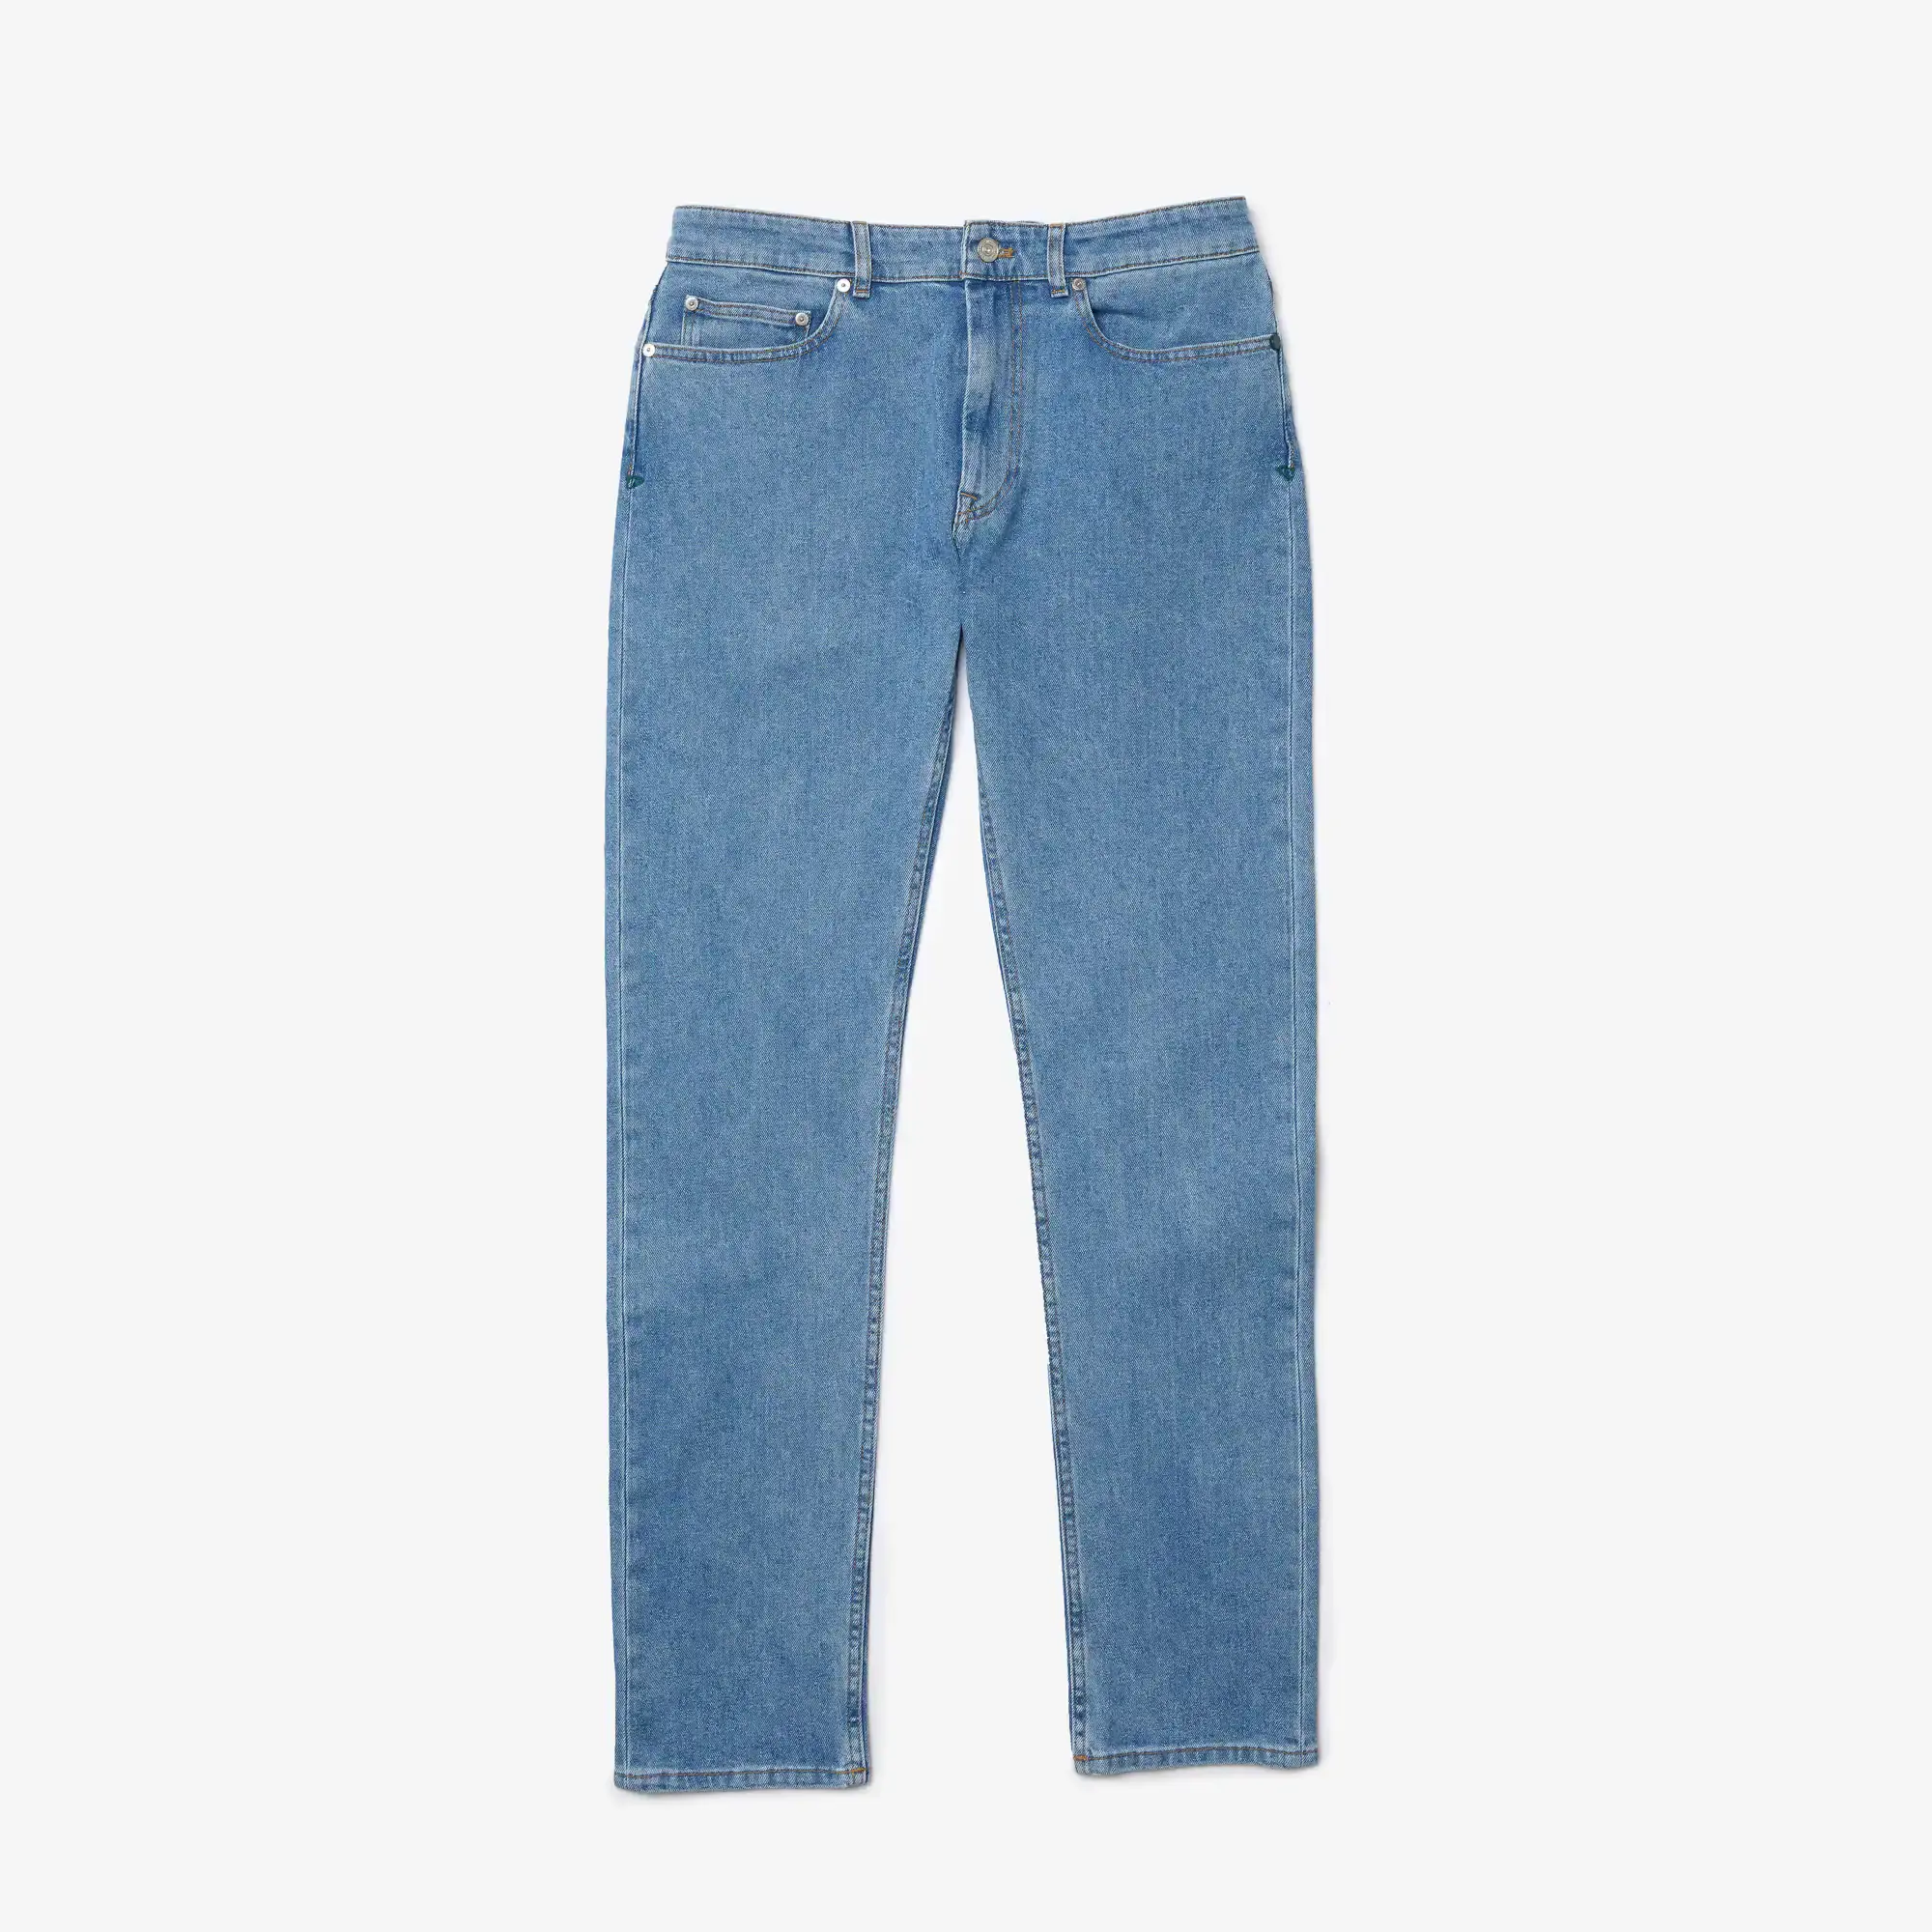 Lacoste Men's Slim Fit Stretch Cotton Denim Jeans. 2